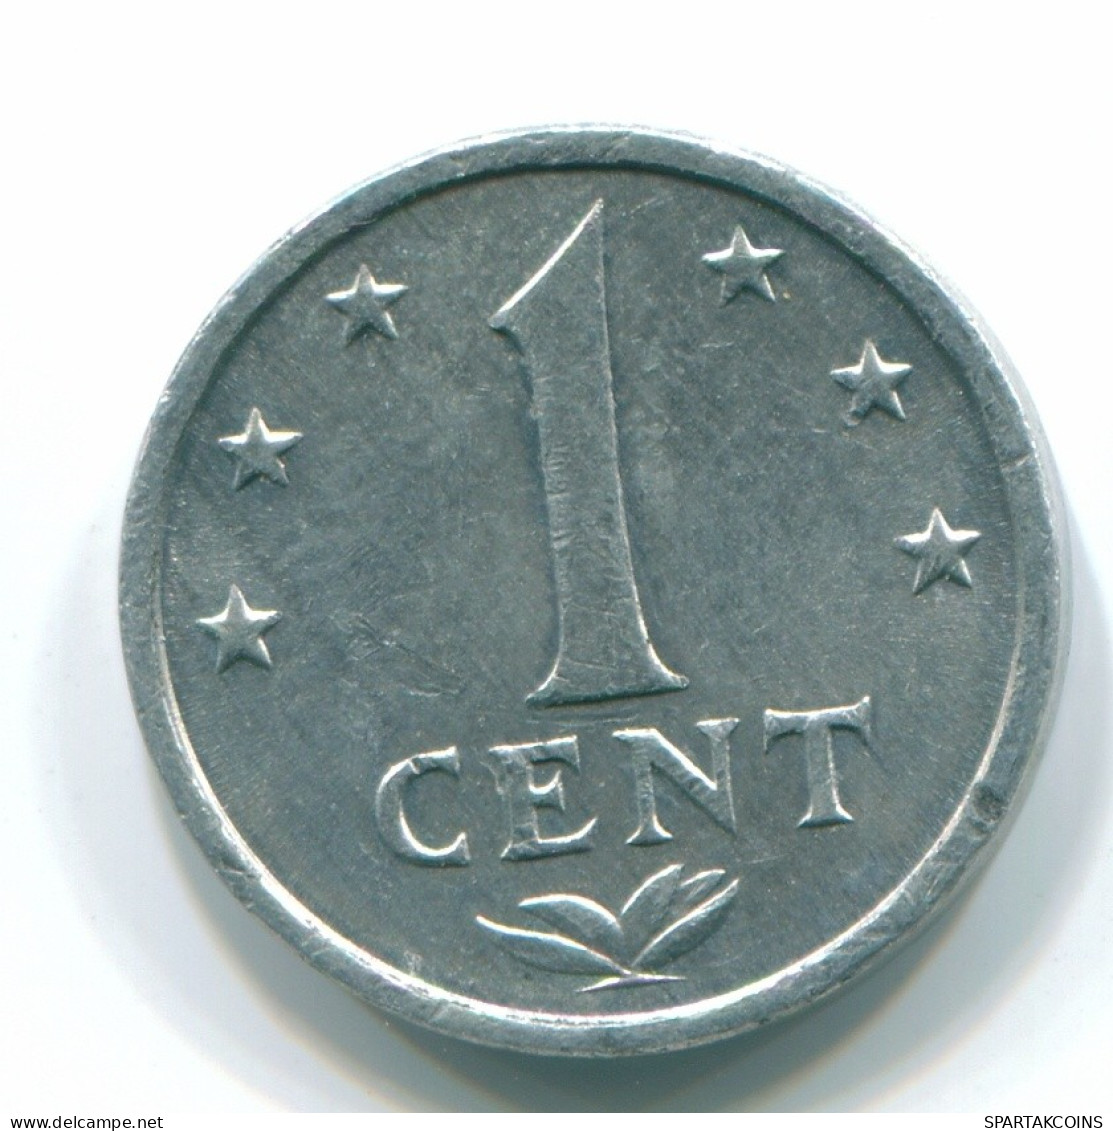 1 CENT 1979 NETHERLANDS ANTILLES Aluminium Colonial Coin #S11171.U.A - Antilles Néerlandaises